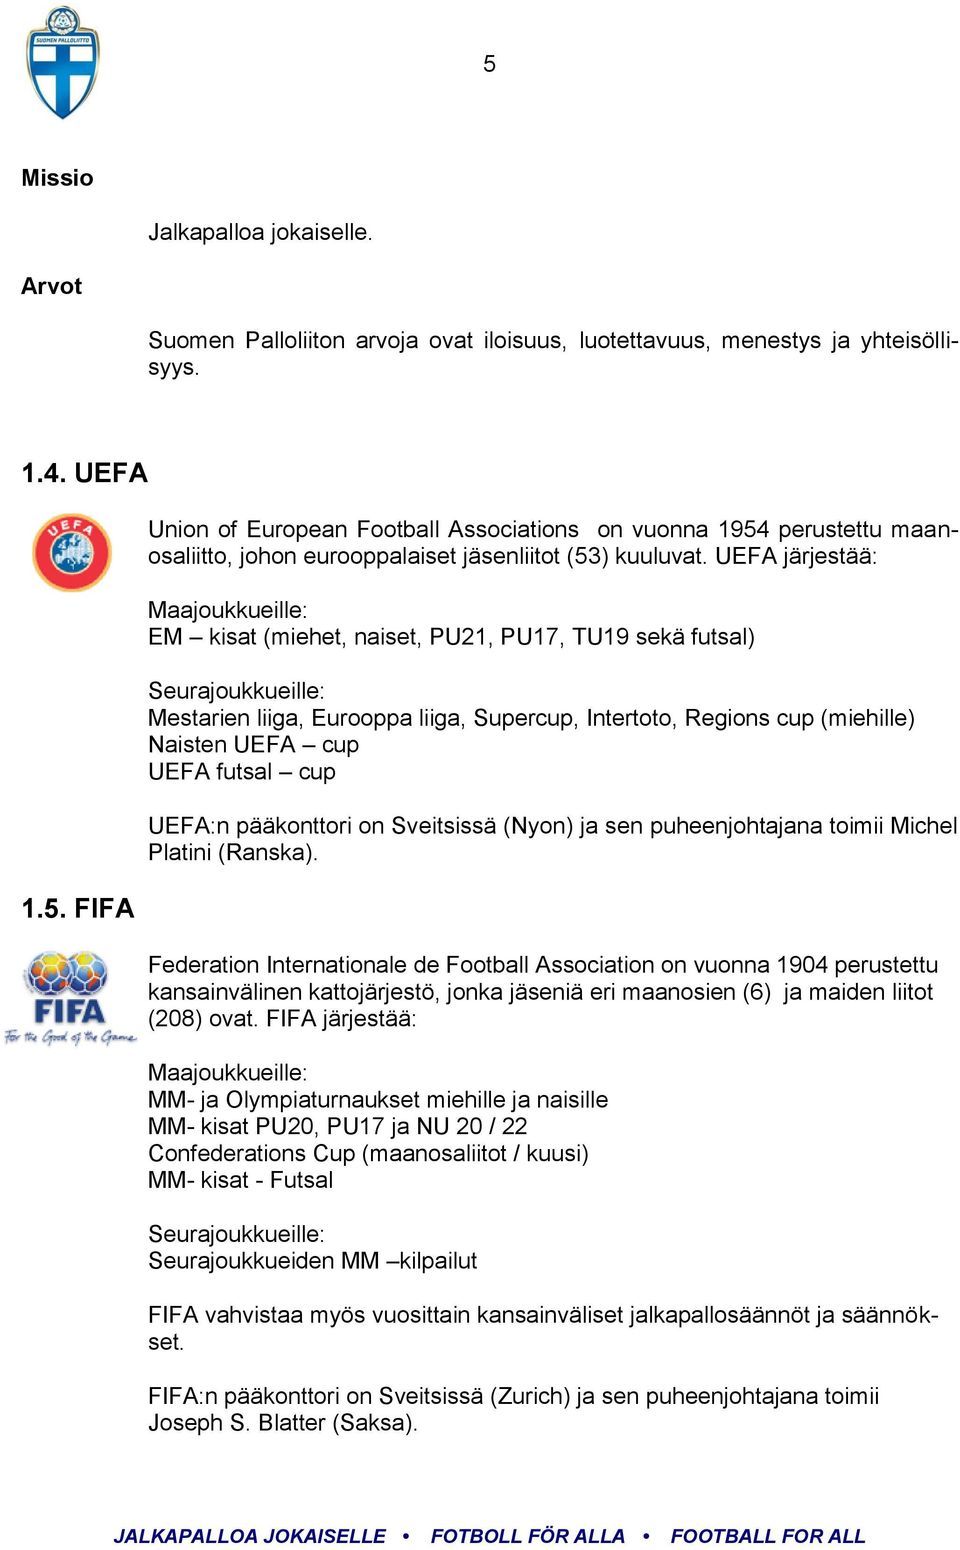 UEFA futsal cup UEFA:n pääkonttori on Sveitsissä (Nyon) ja sen puheenjohtajana toimii Michel Platini (Ranska).